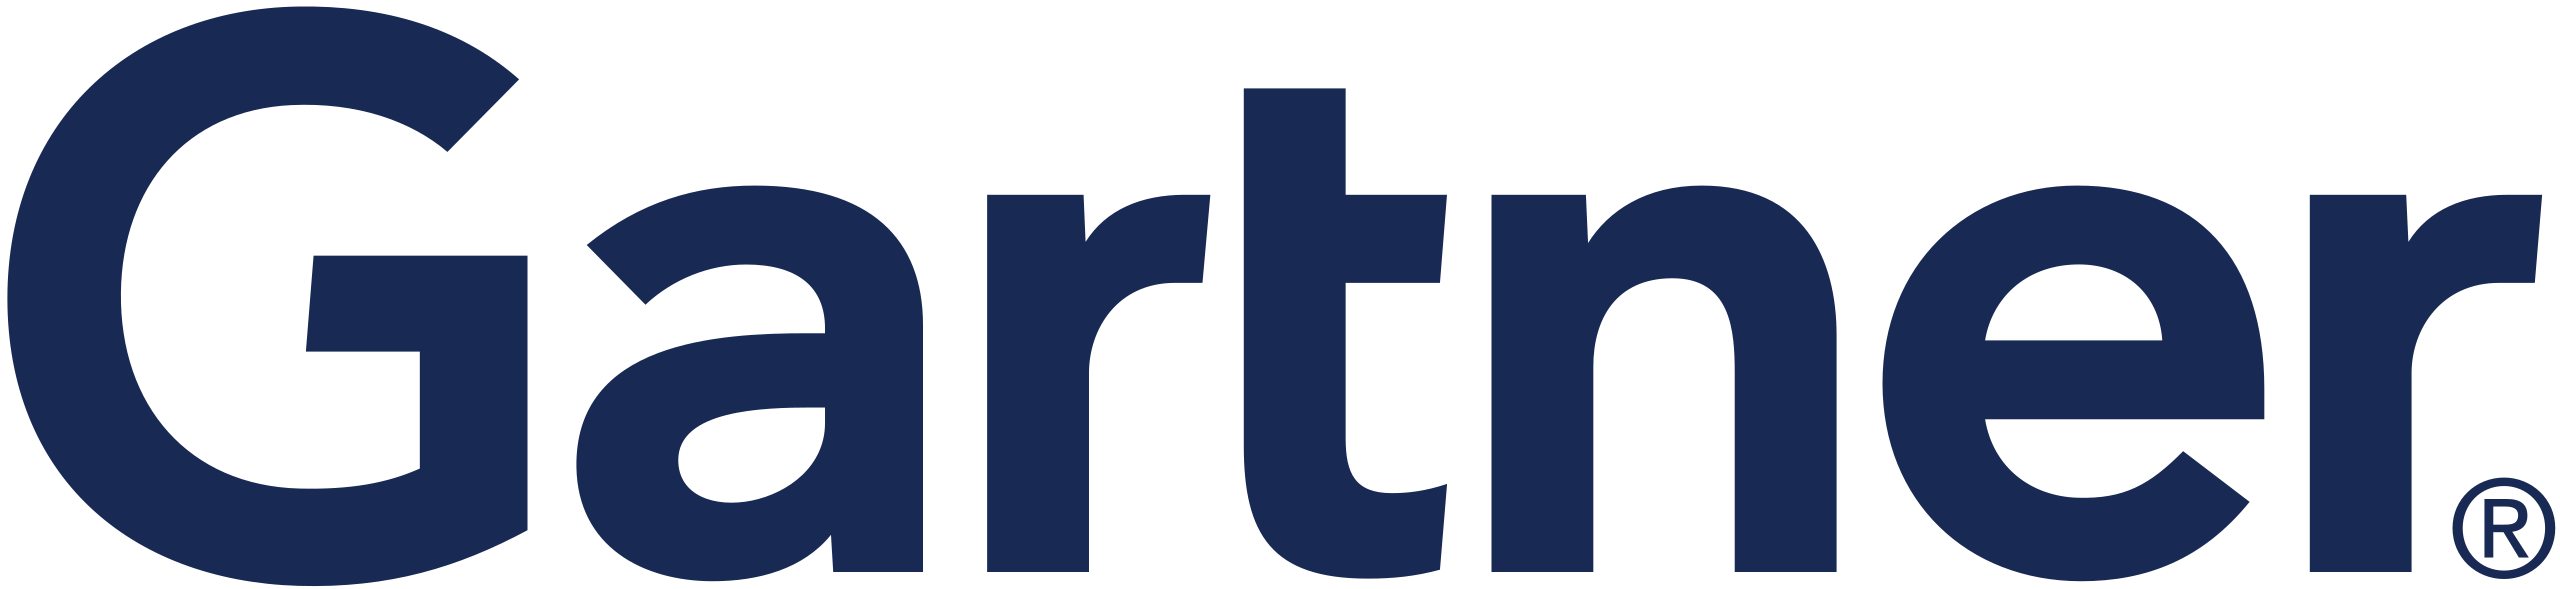 Gartner_logo.svg